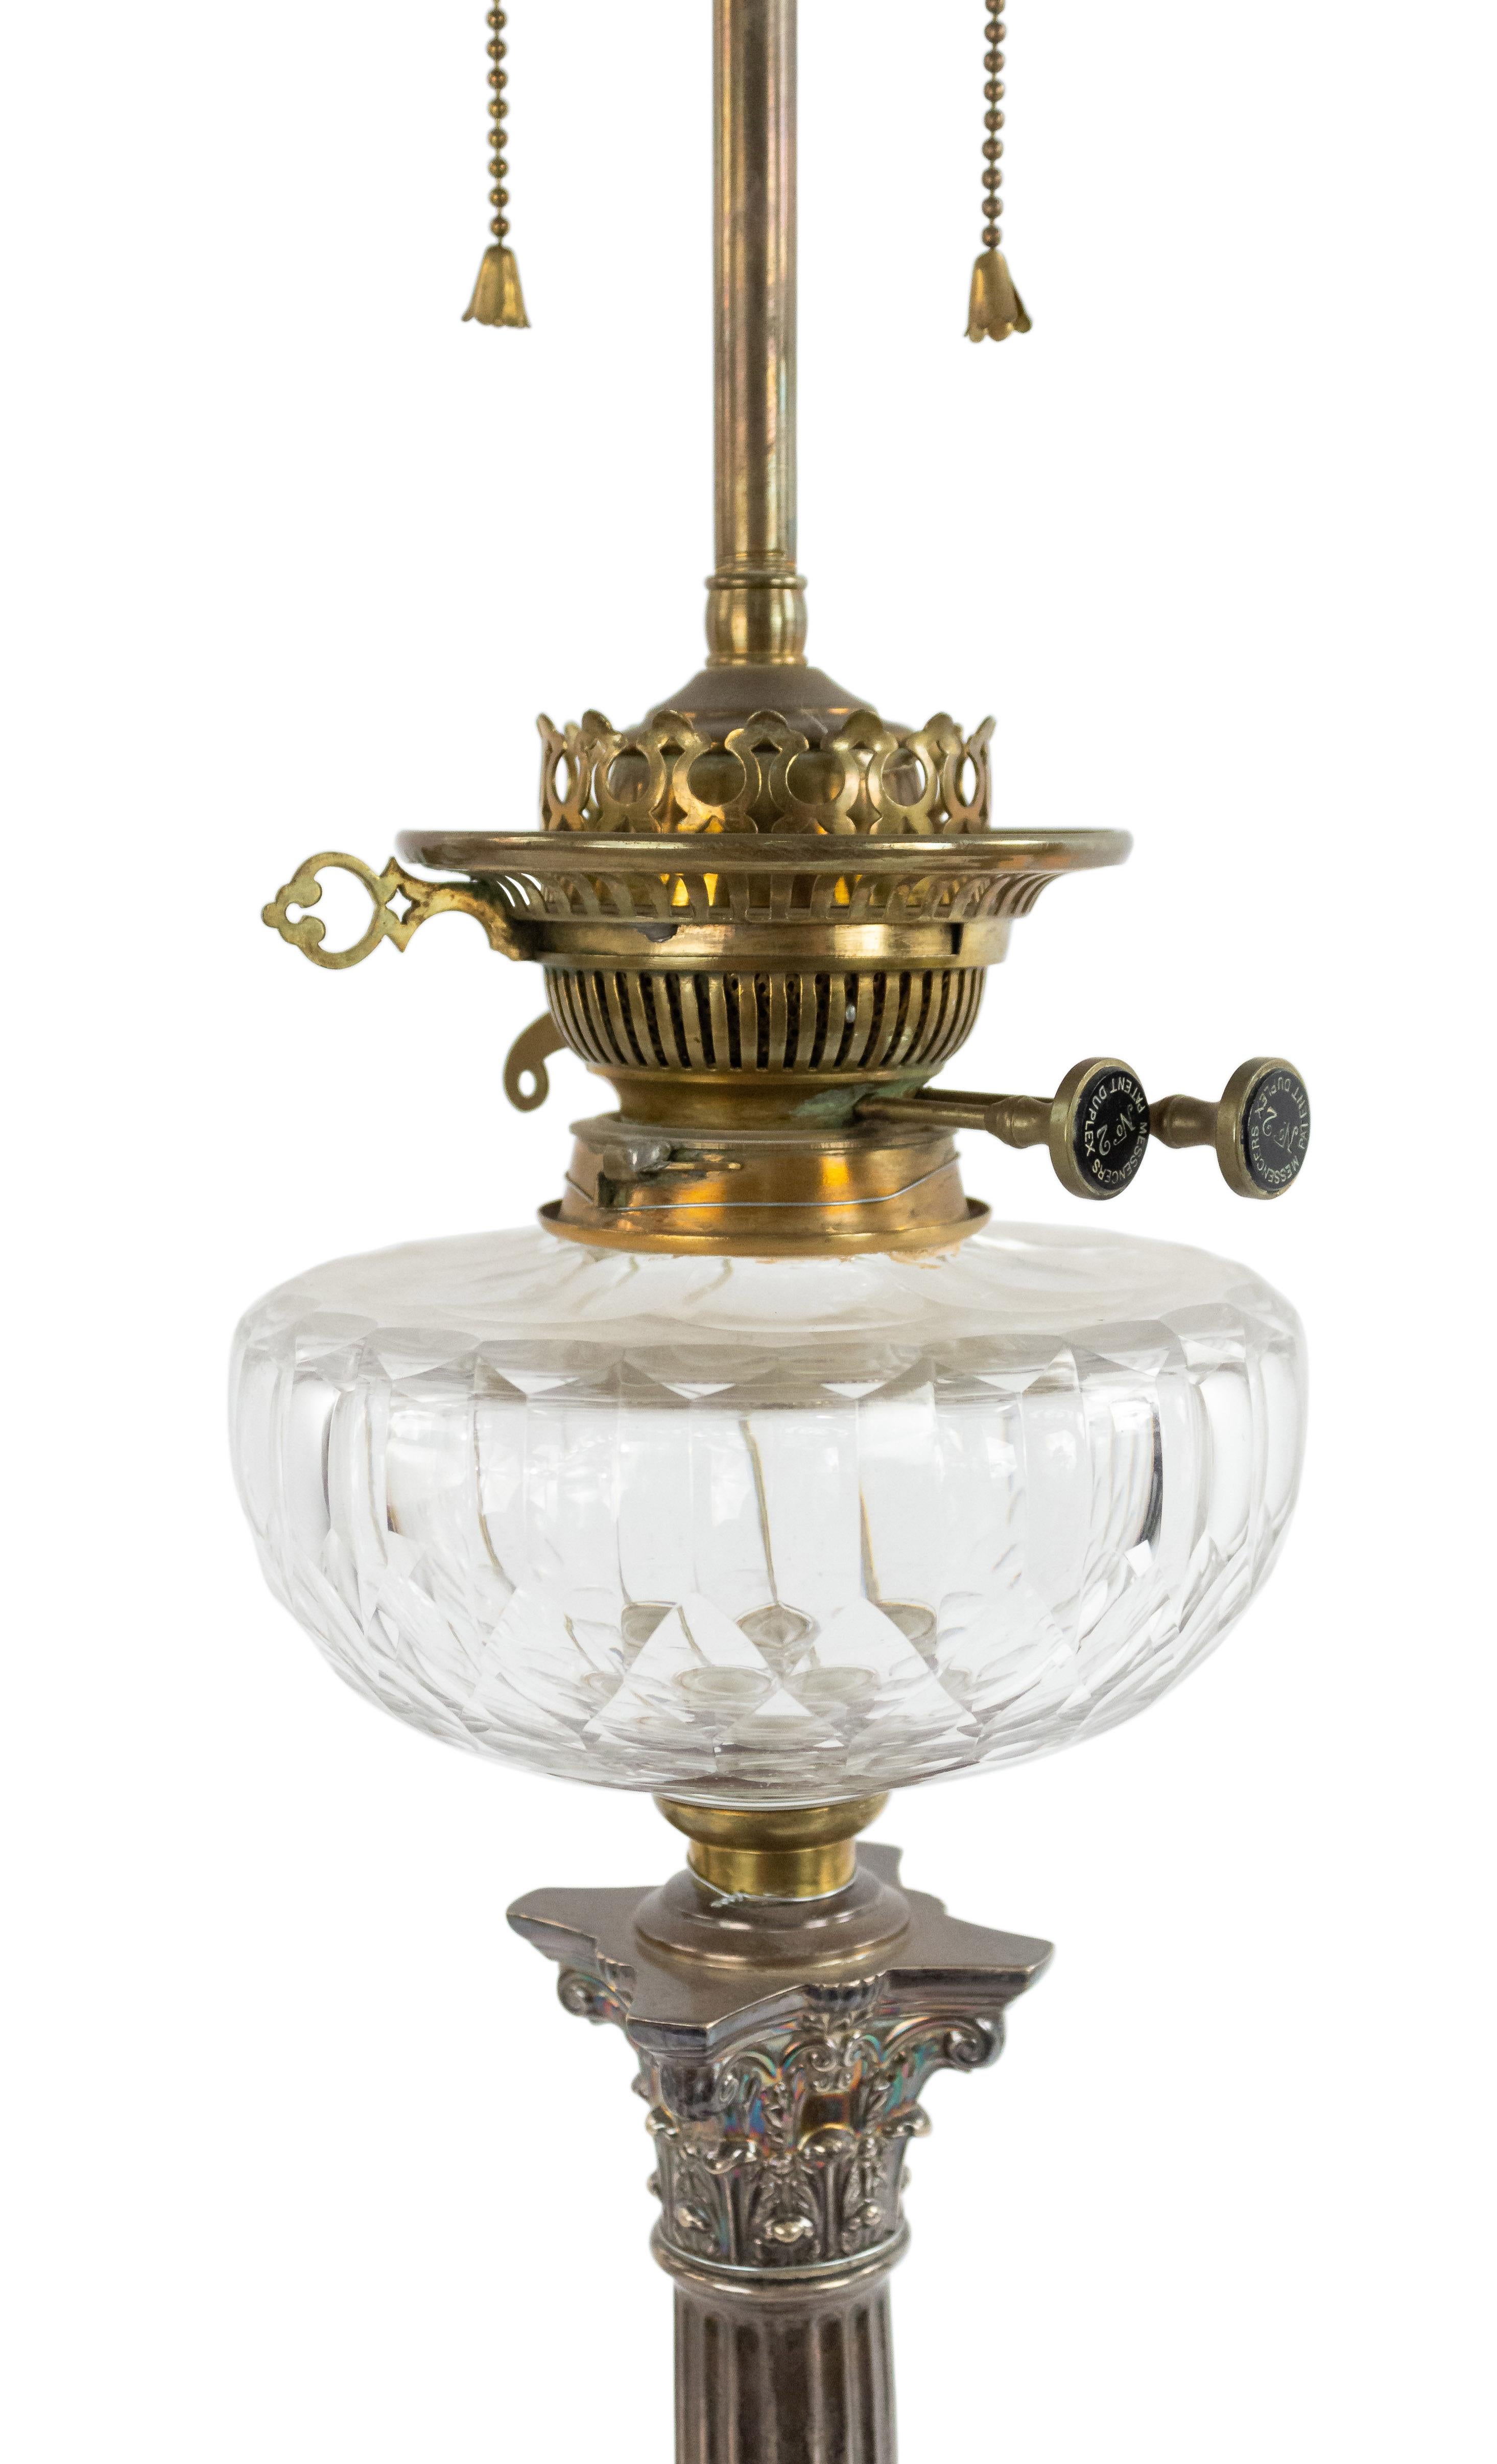 Englische Tischlampe im Adam-Stil (19. Jahrhundert) mit korinthischer Säule aus Silberblech und Kristallglas.
